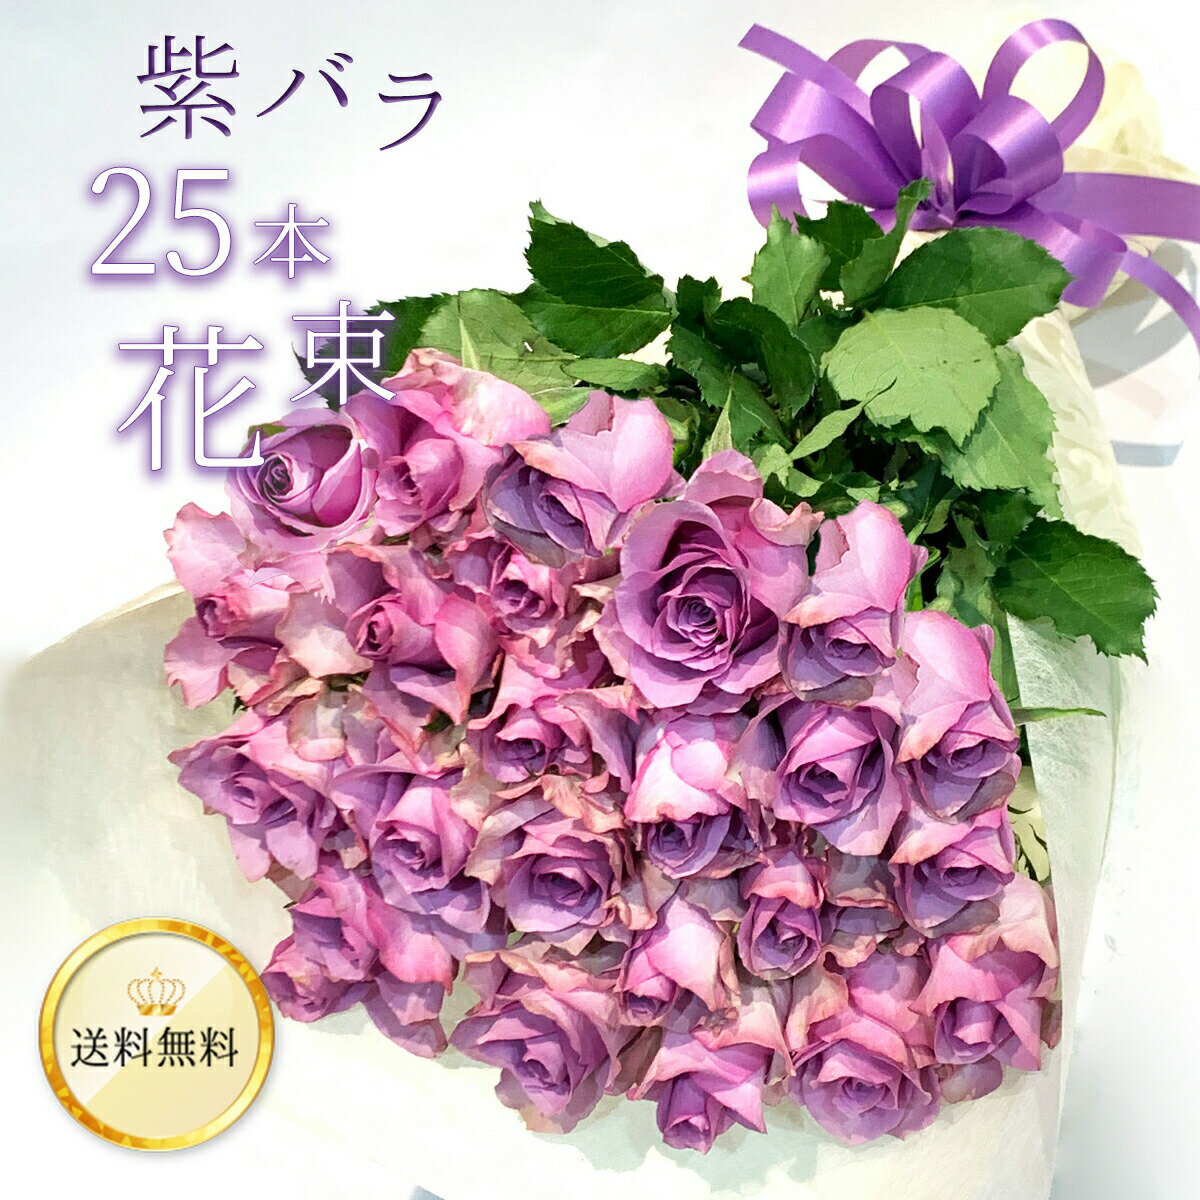 20％OFF 紫バラ25本の花束 生花 ムラサキバラ 東京銀座クオリティ 送料無料 送料込み 紫色 バラ 薔薇 ばら 花束 お祝…